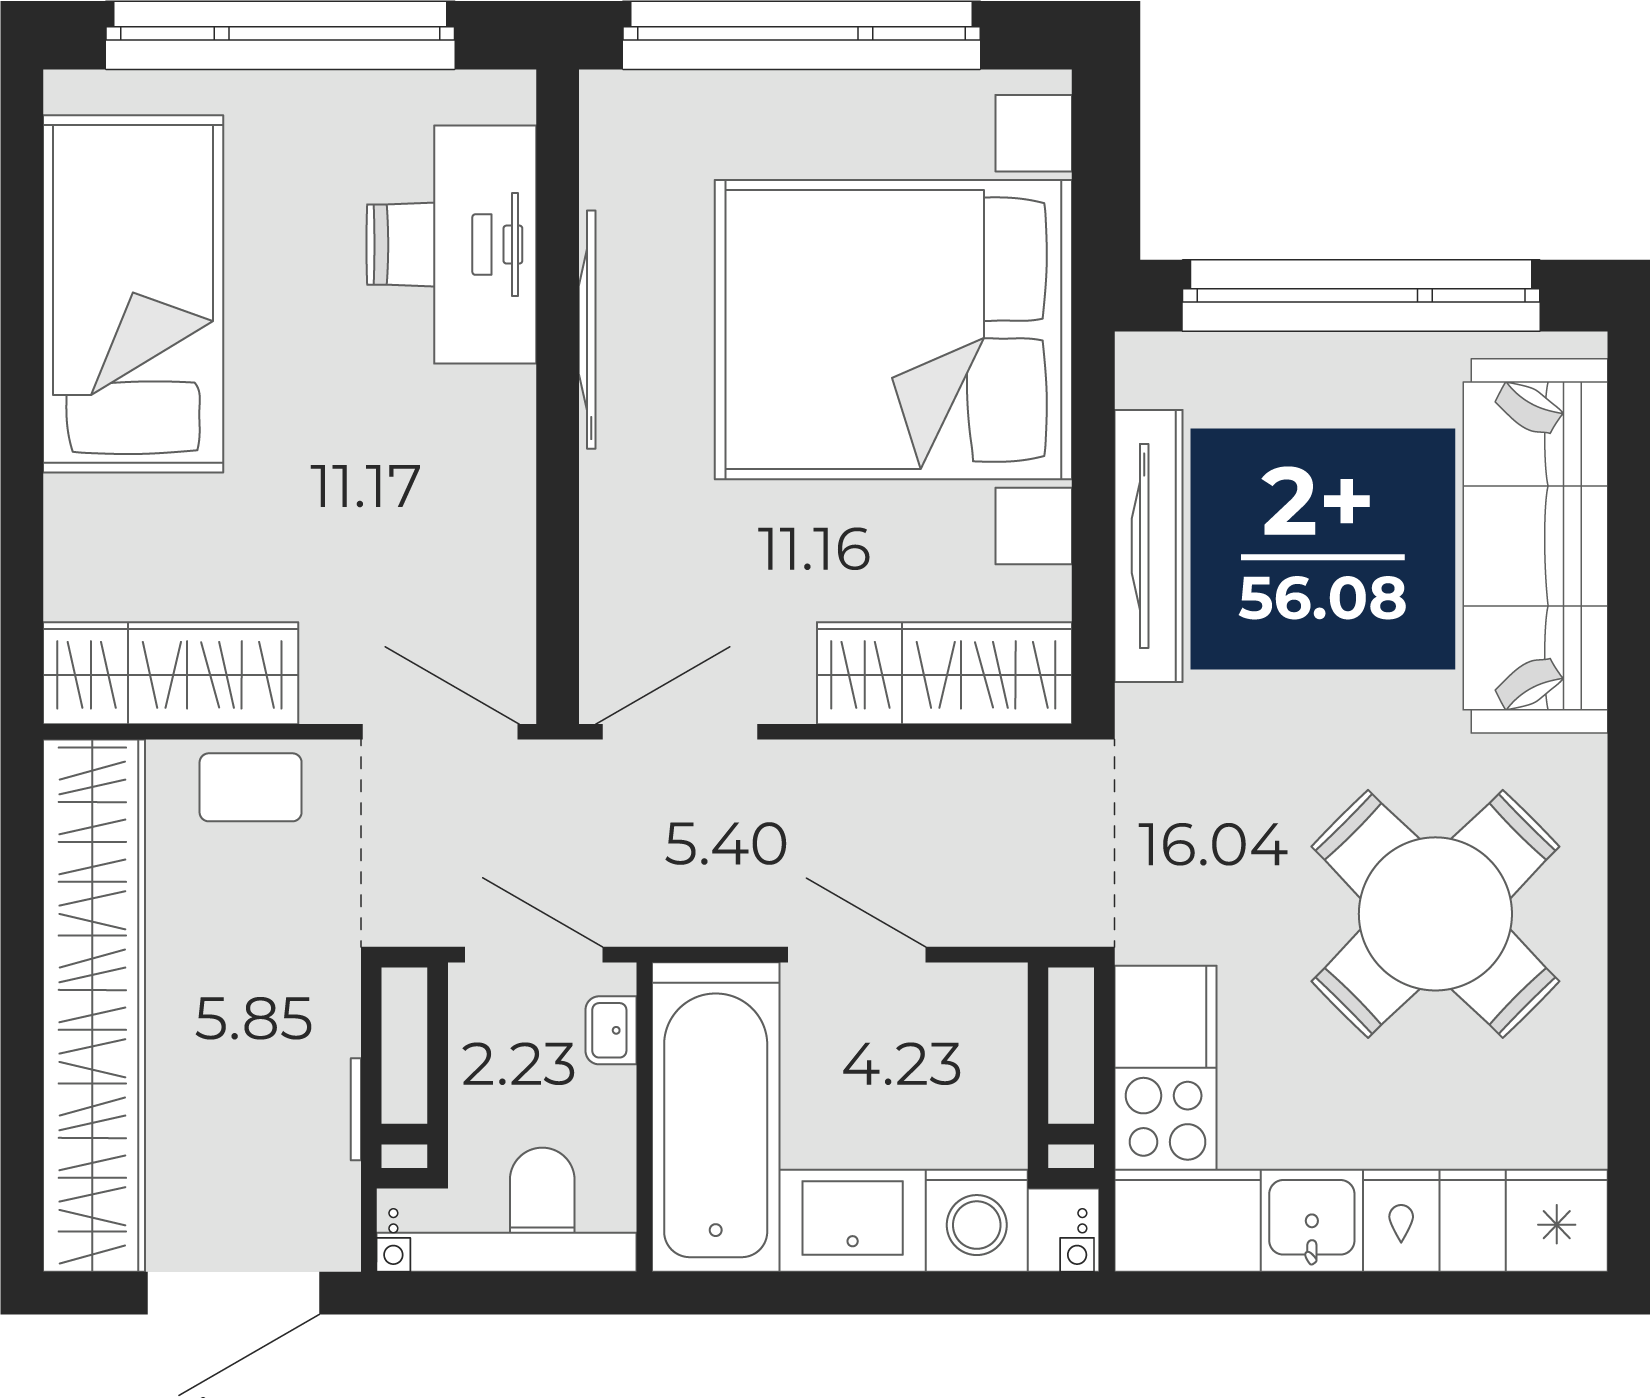 Квартира № 254, 2-комнатная, 56.08 кв. м, 15 этаж